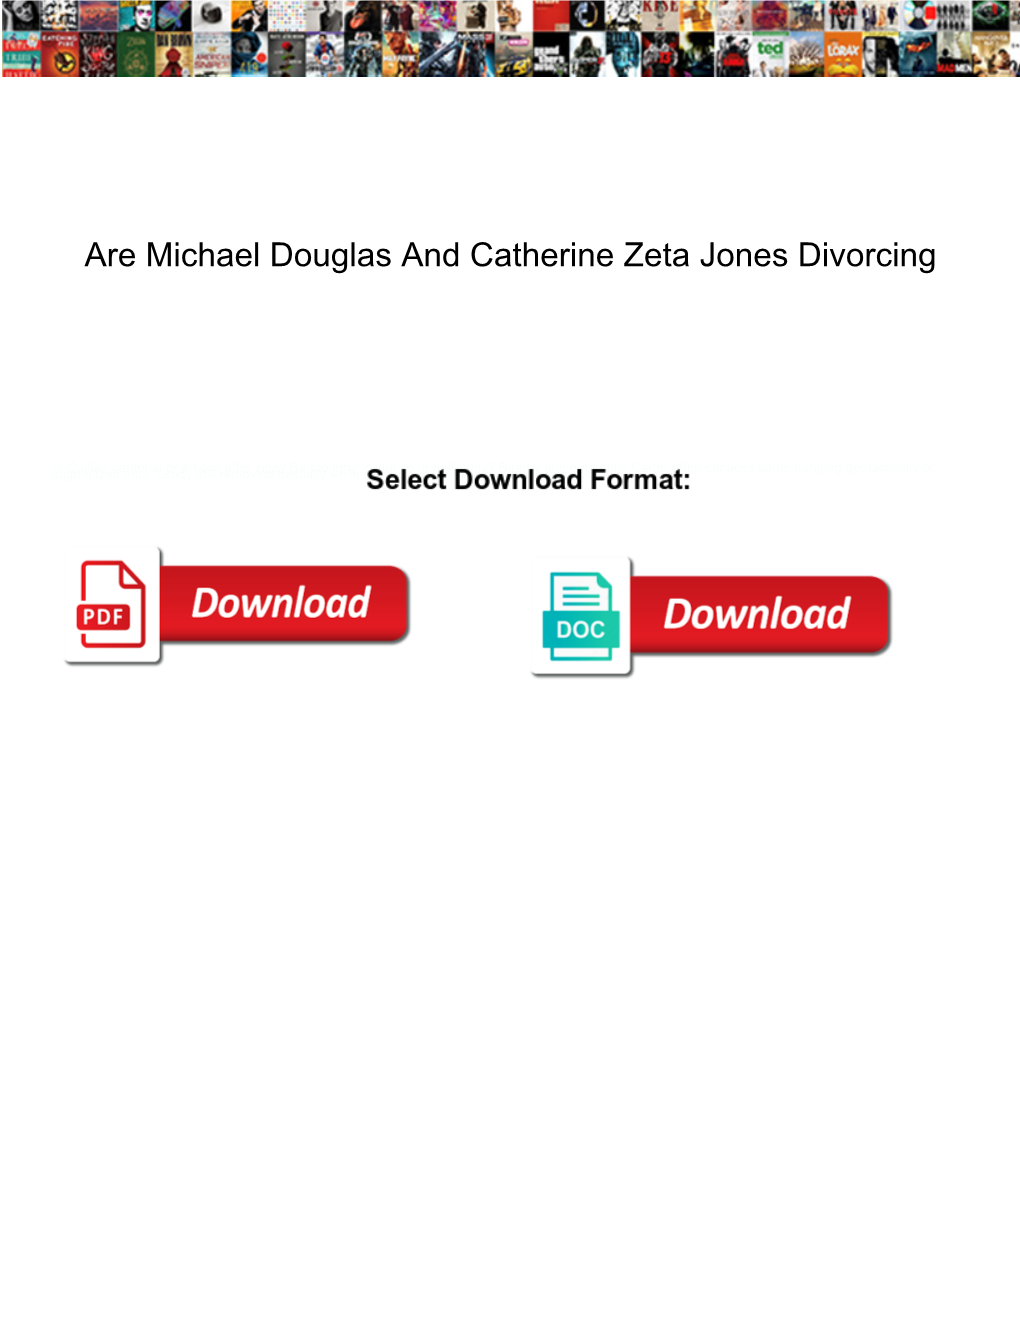 Are Michael Douglas and Catherine Zeta Jones Divorcing